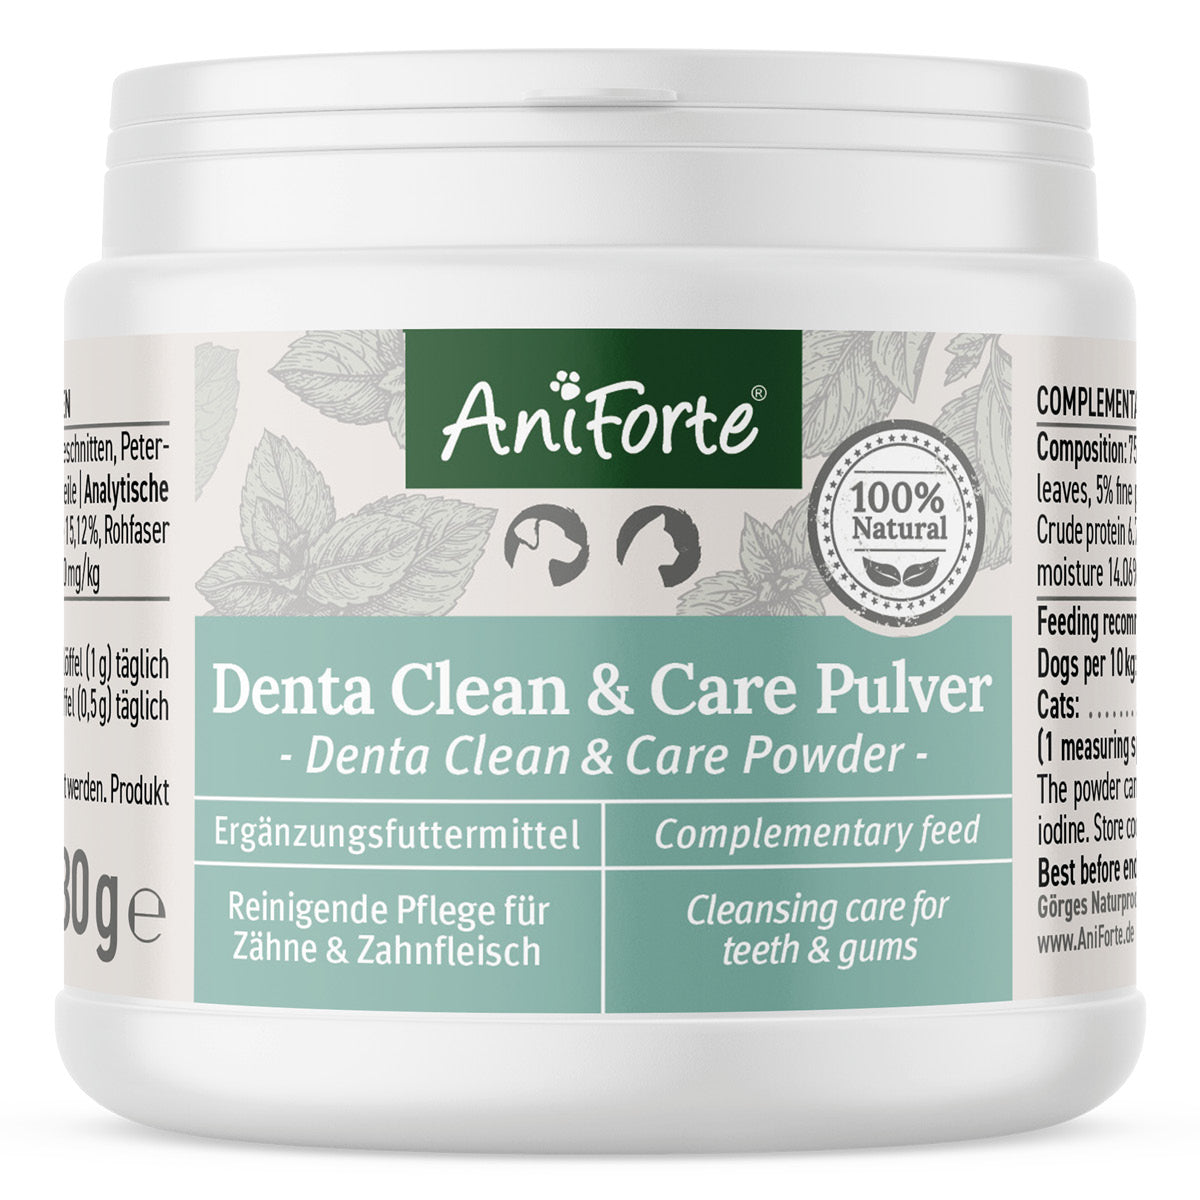 Denta Clean & Care Pulver